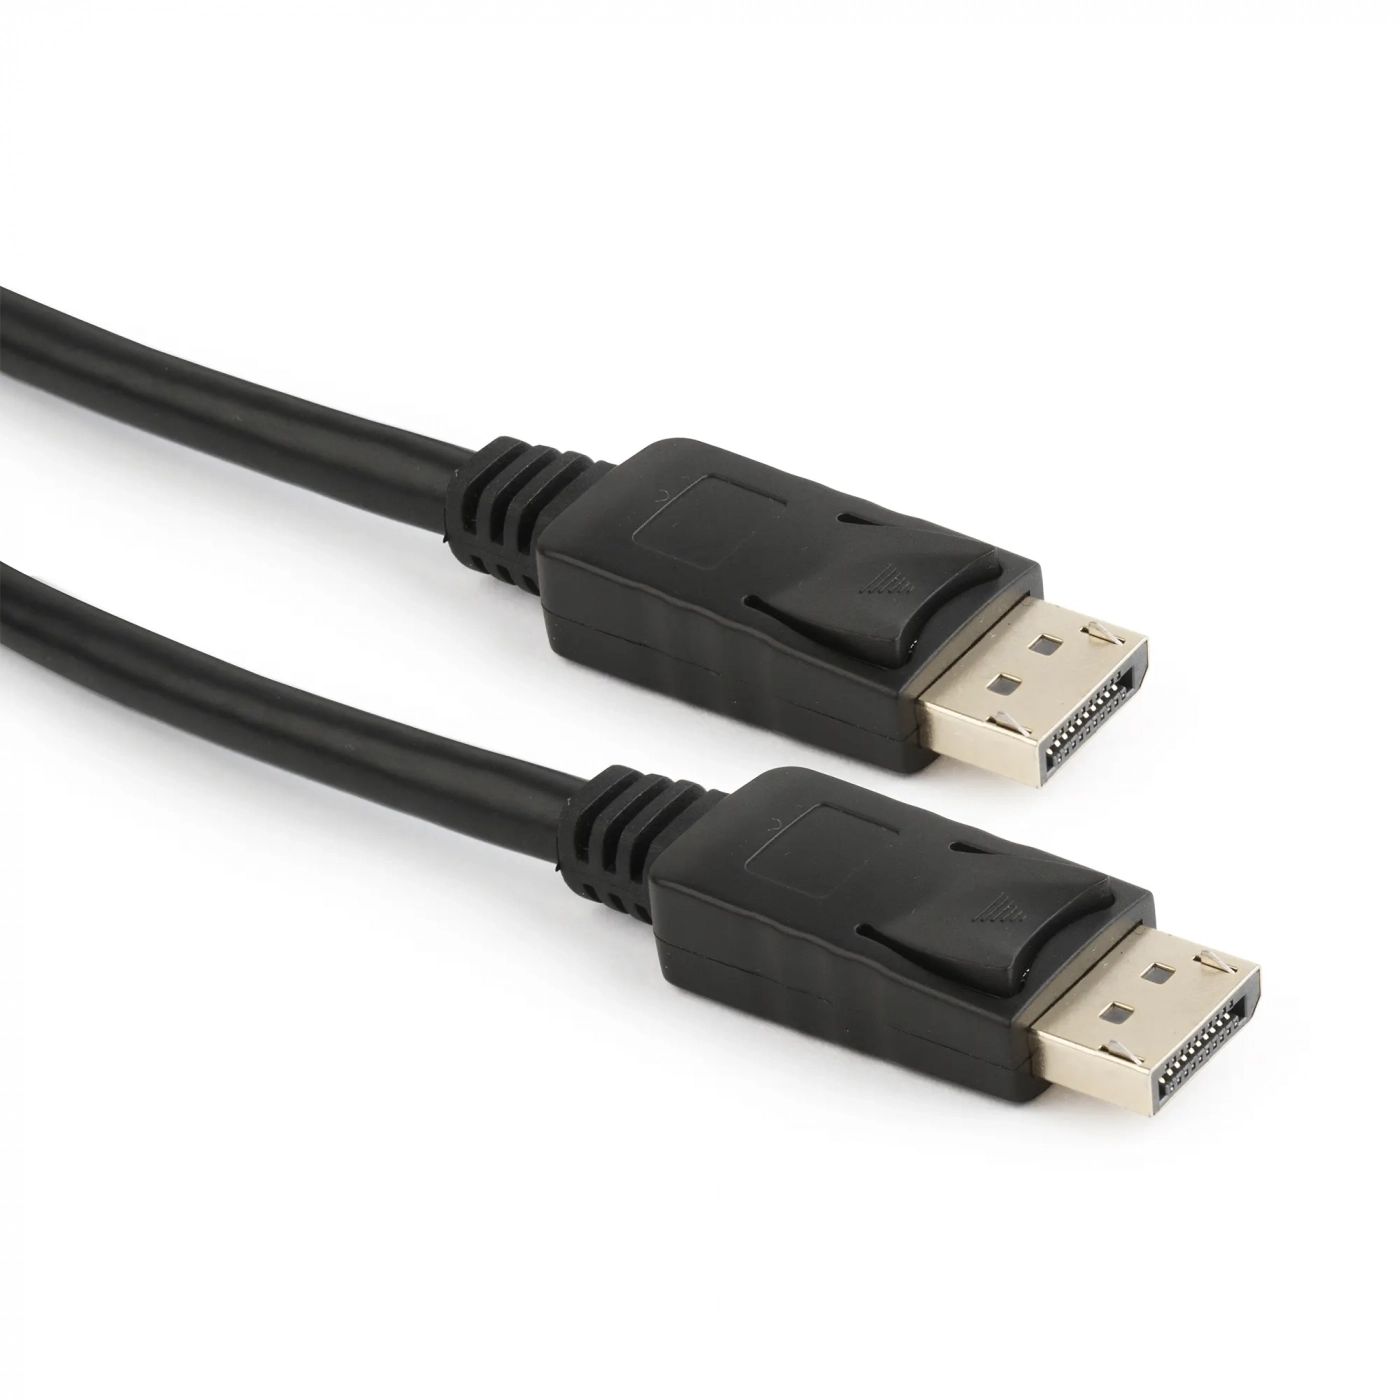 Купить Кабель Cablexpert CC-DP2-10, DisplayPort v1.2 цифровой интерфейс, 3.0 м - фото 2